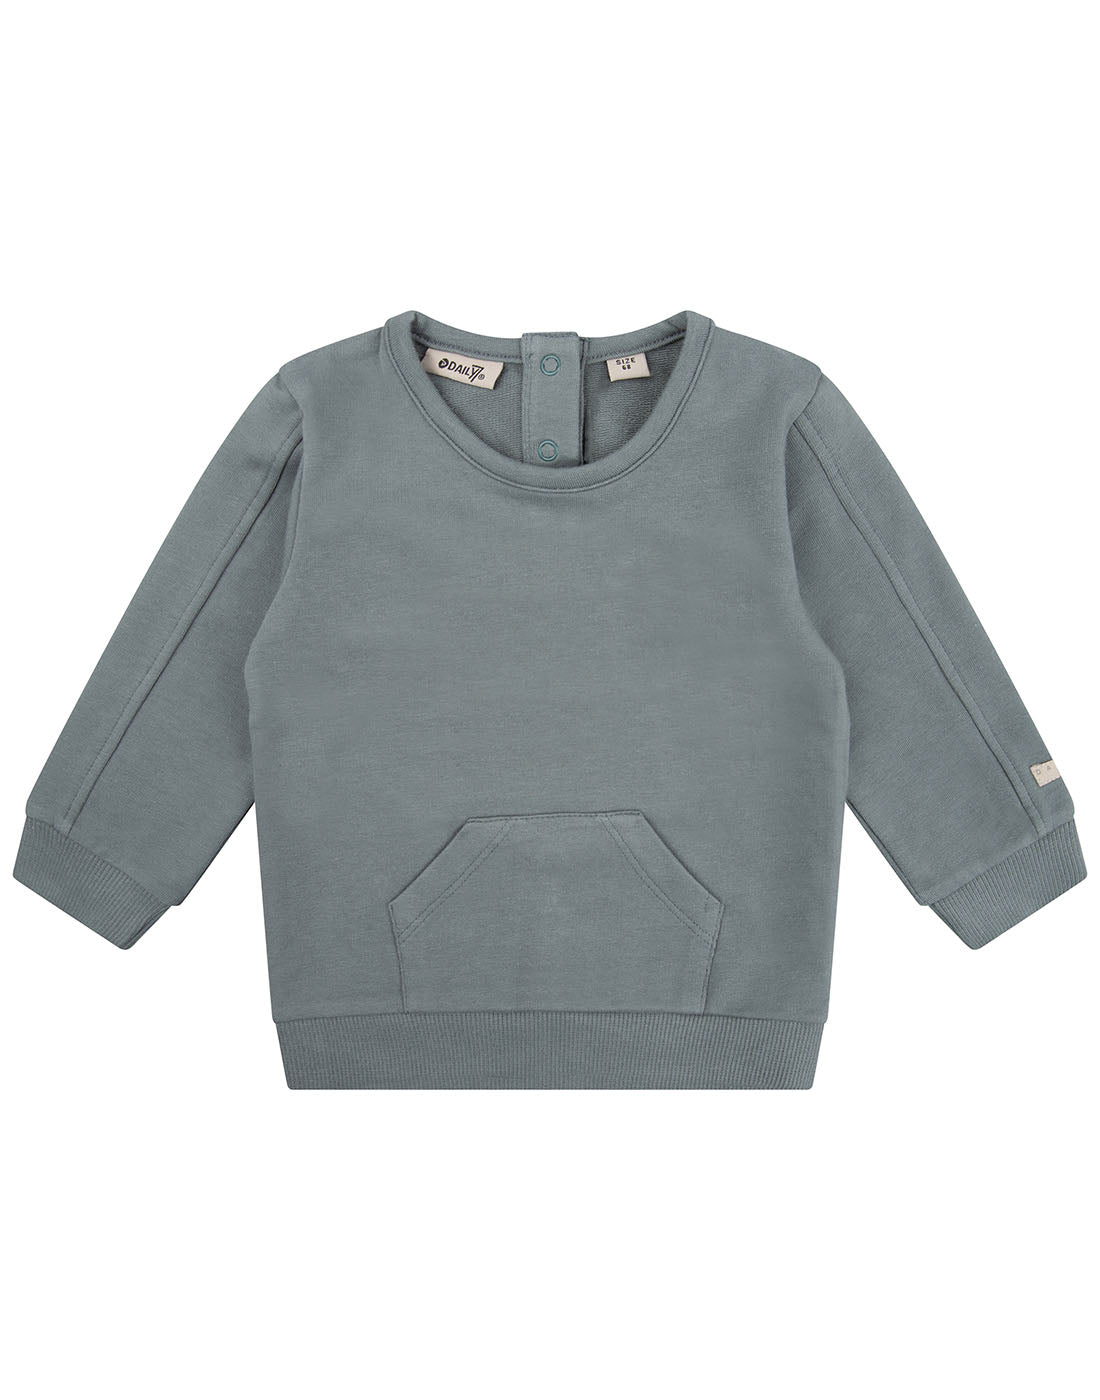 Daily7 Sweater Crewneck Kangaroo Pocket